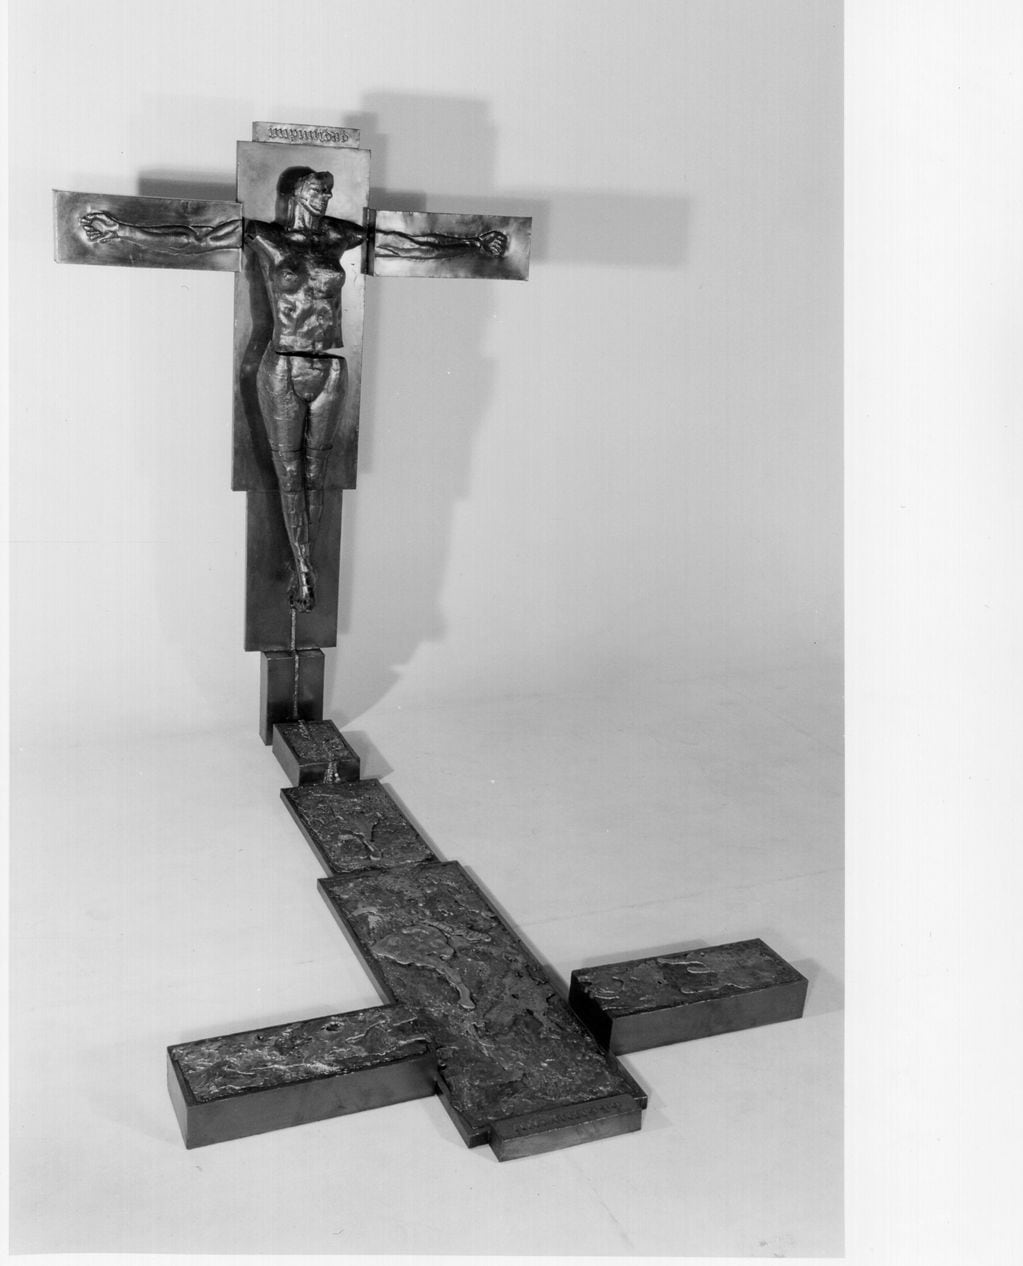 Una obra visceral para los tiempos. La figura femenina crucificada como símbolo de la justicia rota.